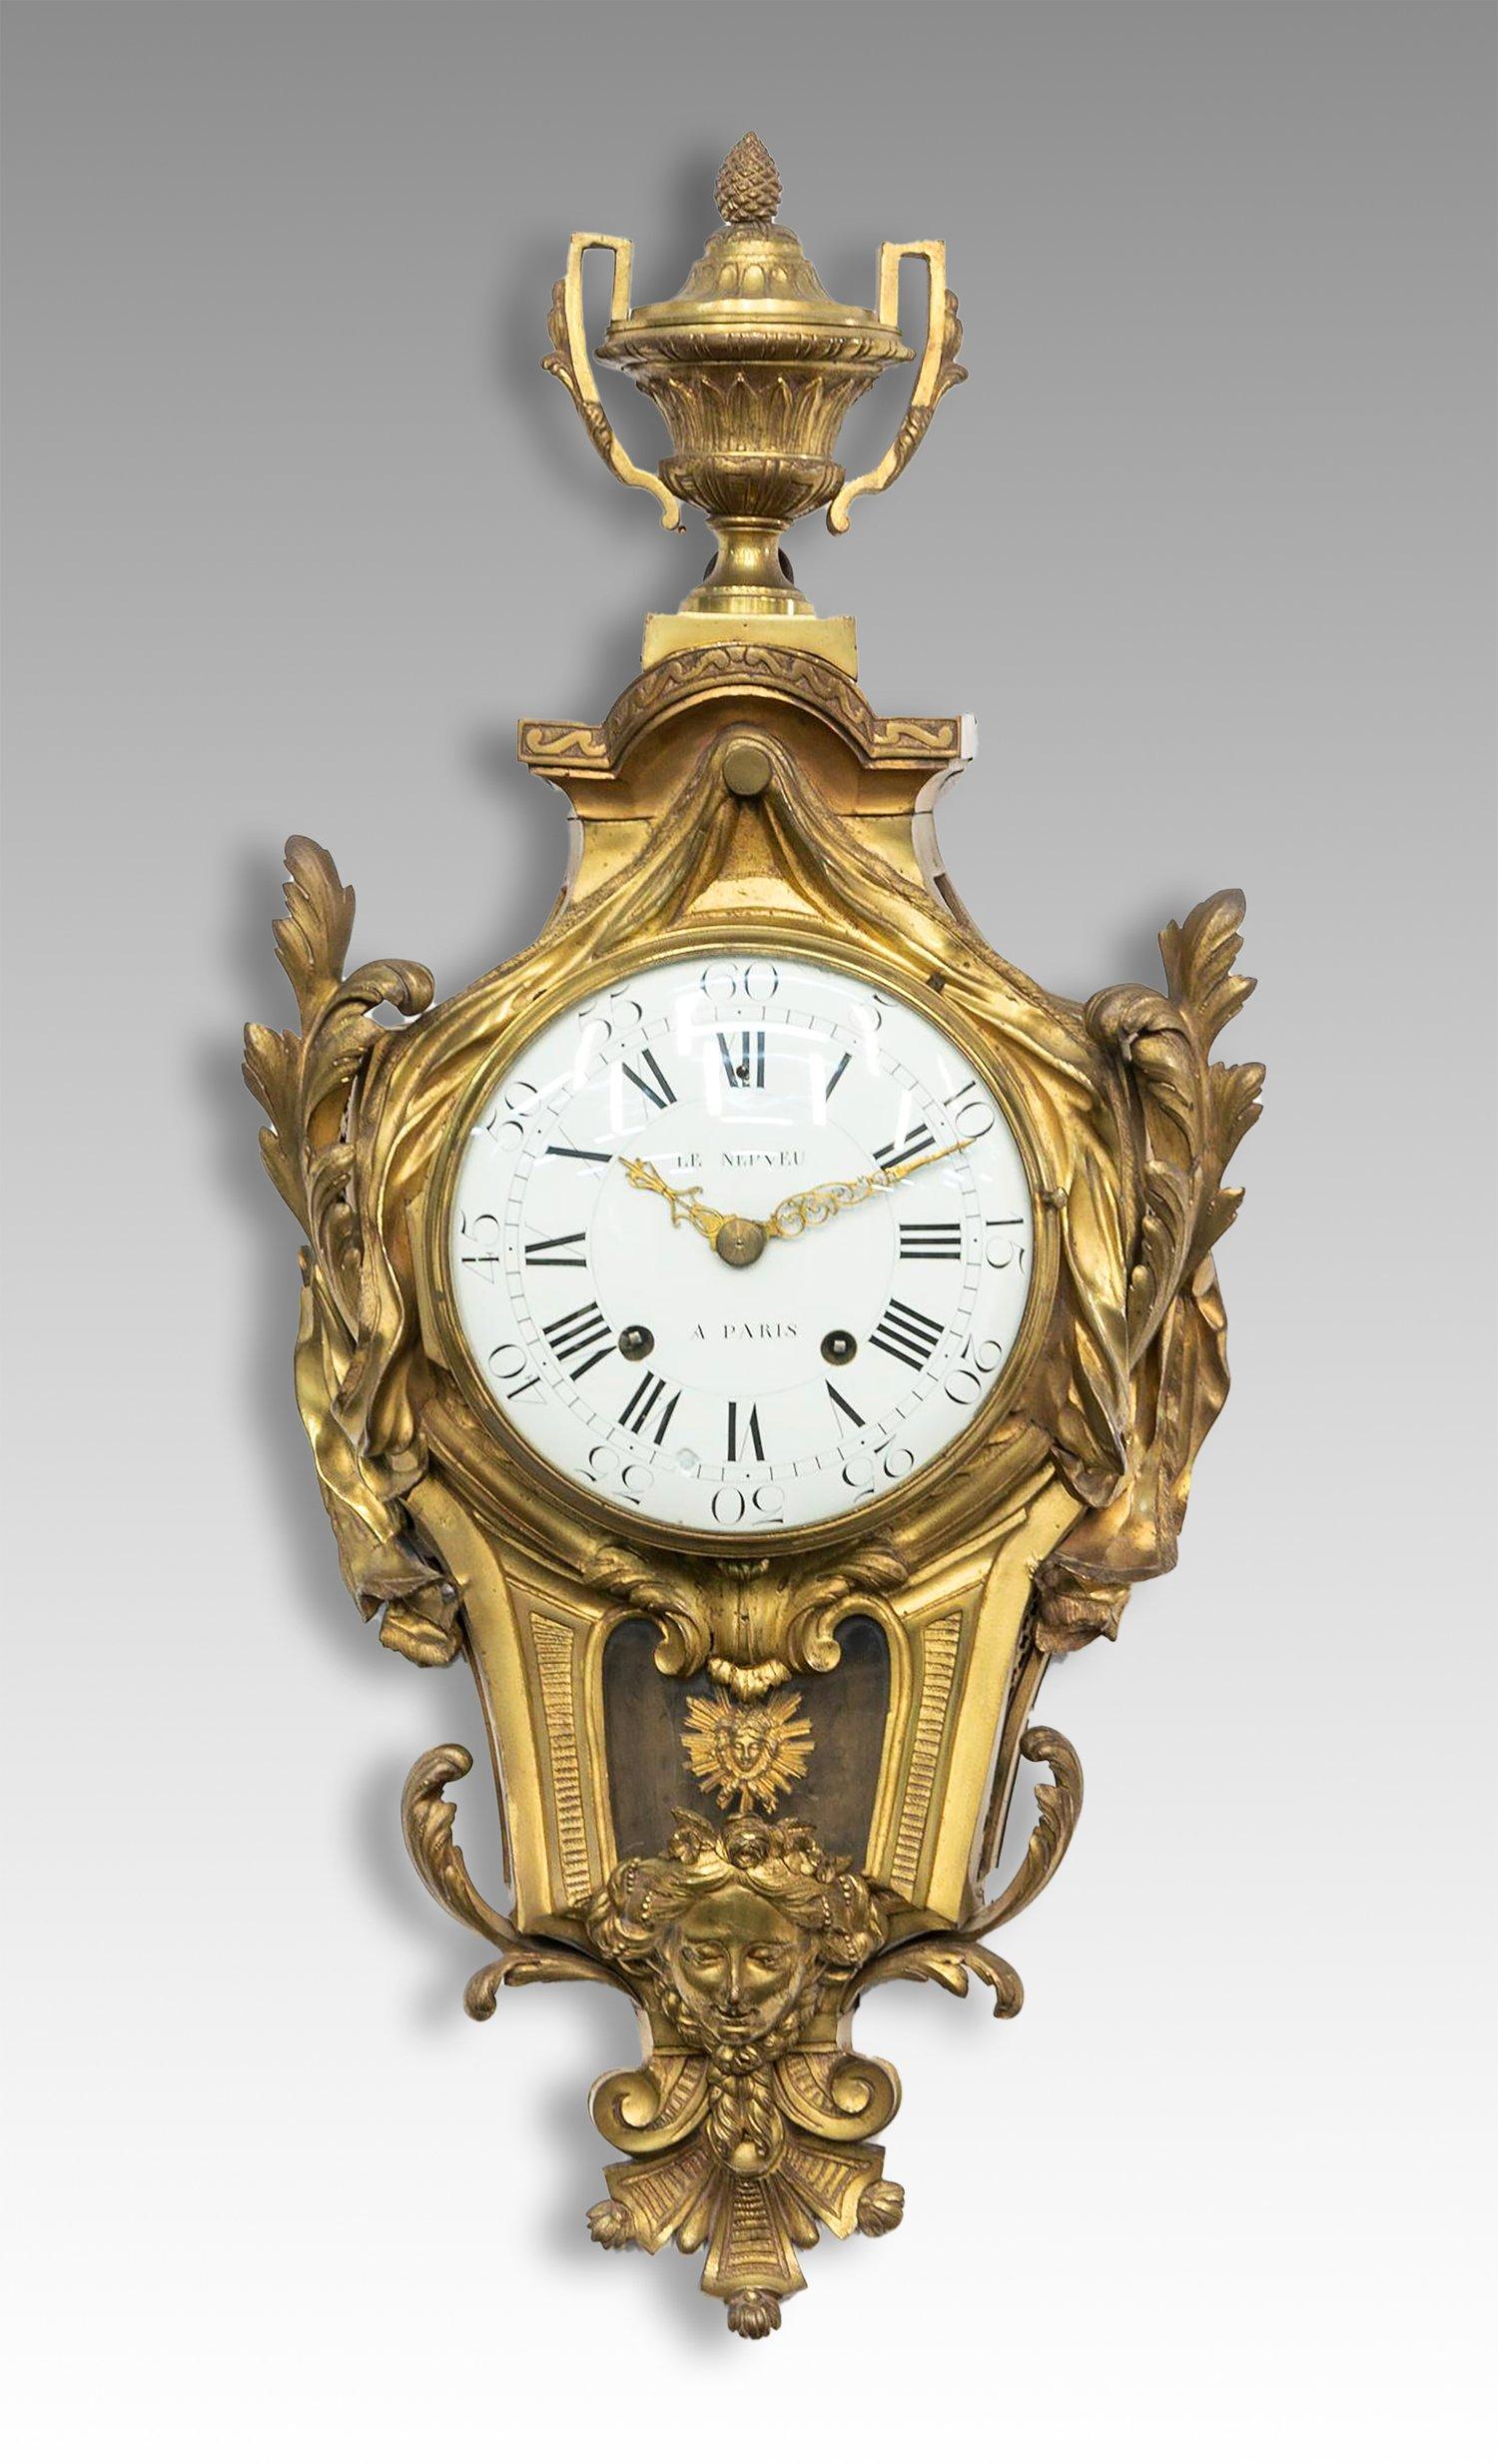 Eine seltene Kartelluhr aus Ormolu des 18. Jahrhunderts von Nicolas-Antoine Le Nepveu aus Paris. Diese außergewöhnliche Cartel-Uhr in einem vergoldeten Bronze- oder Ormolu-Gehäuse ist noch mit ihrem Originalmechanismus ausgestattet. Das 8-Tage-Werk